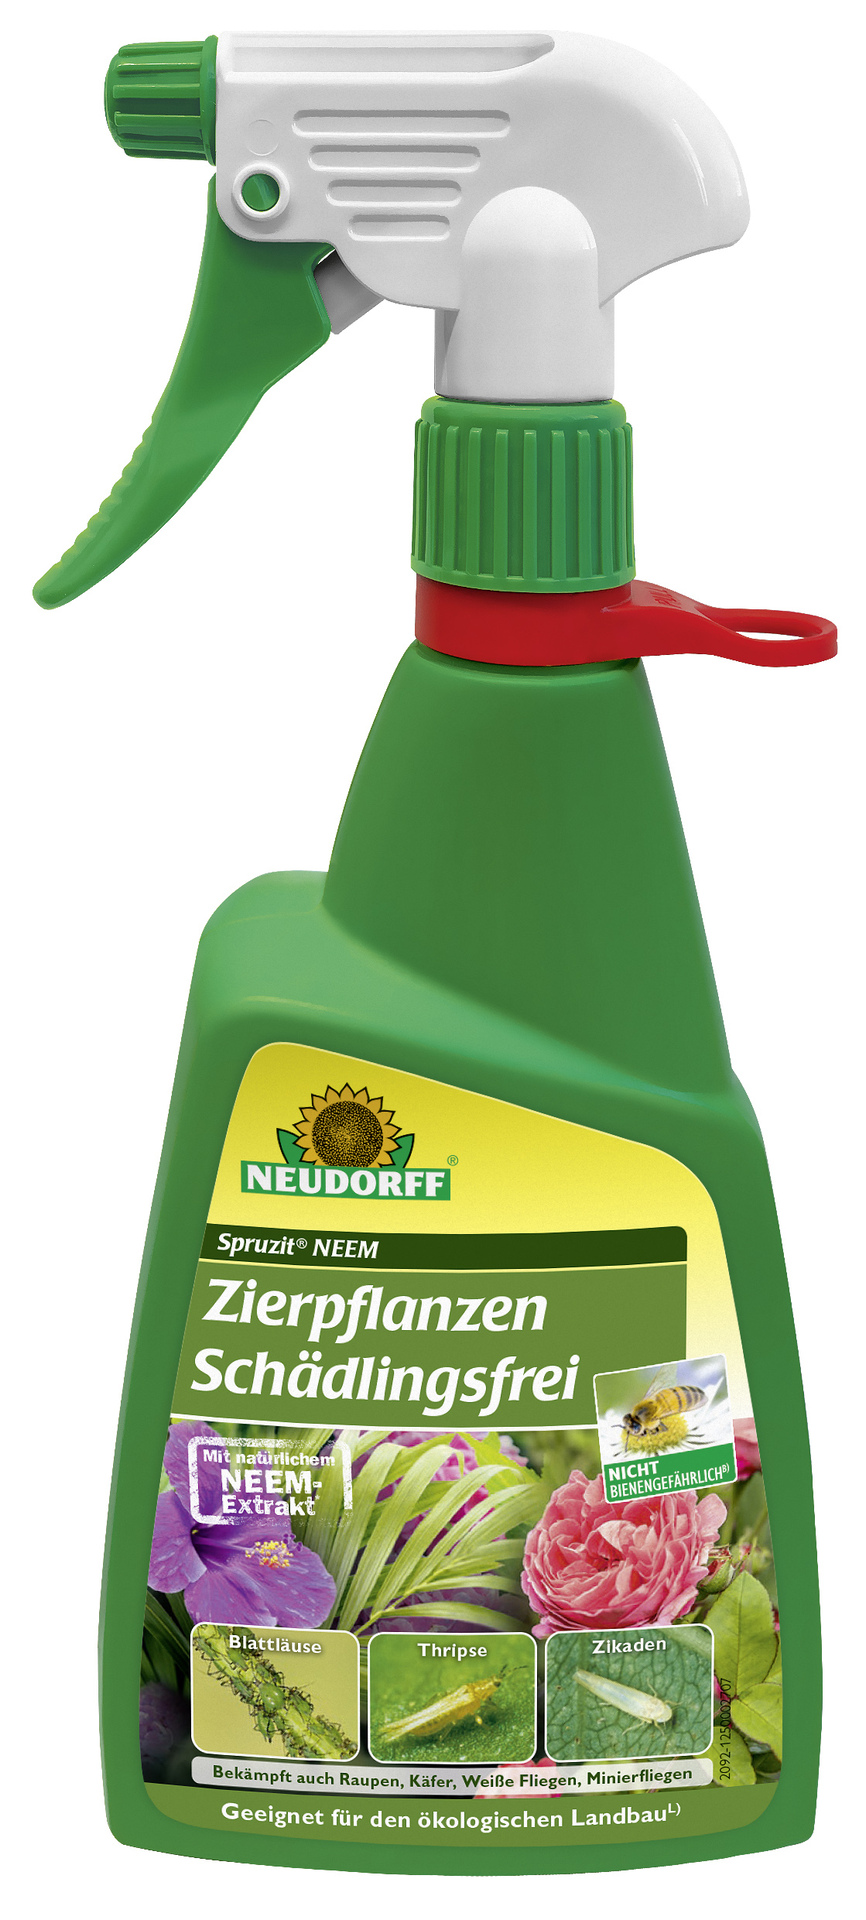 W. Neudorff GmbH KG Spruzit NEEM ZierpflanzenSchädlingsfrei